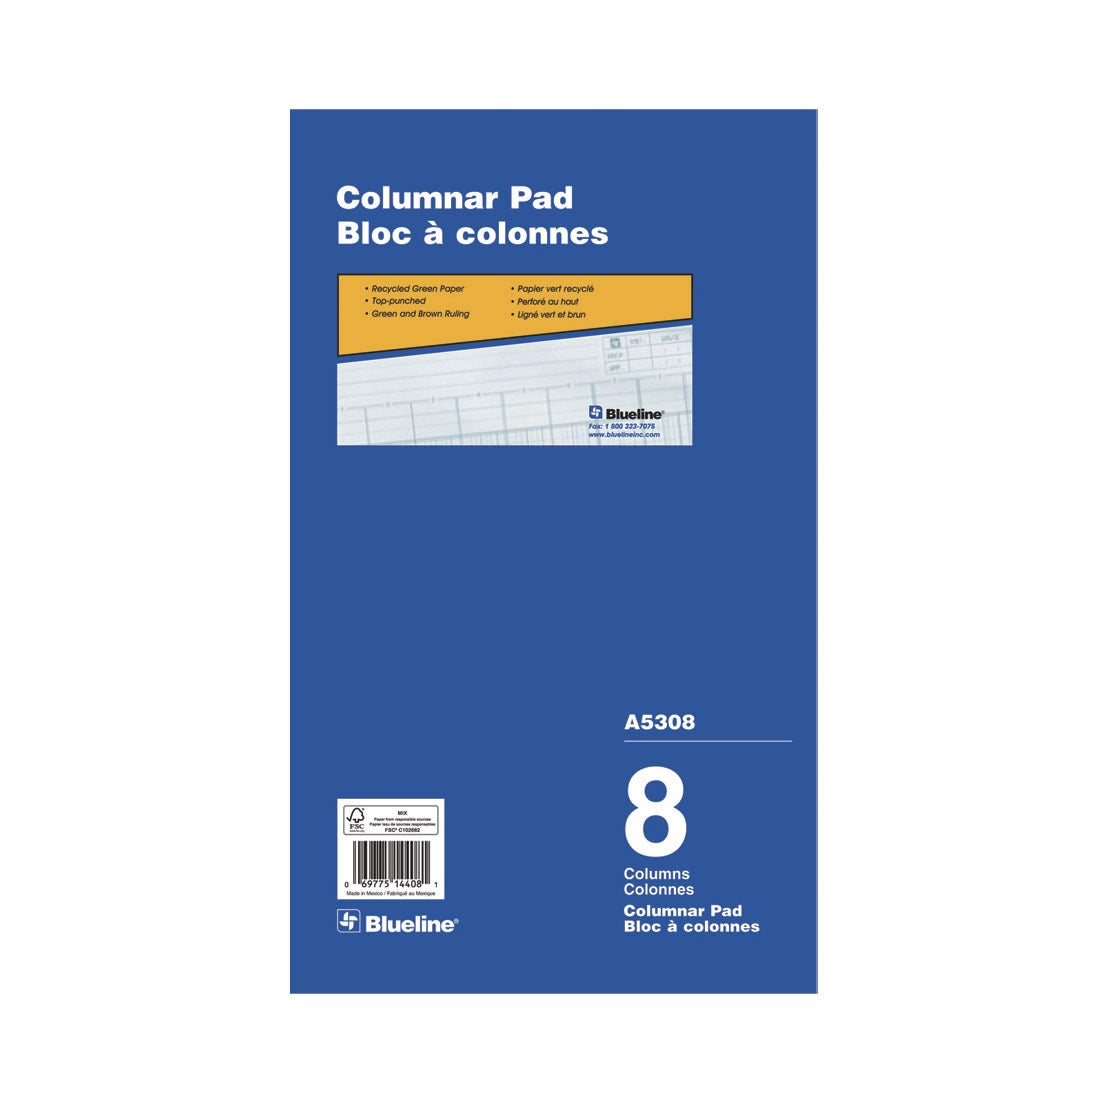 Columnar Pad - 8 Columns, A5308